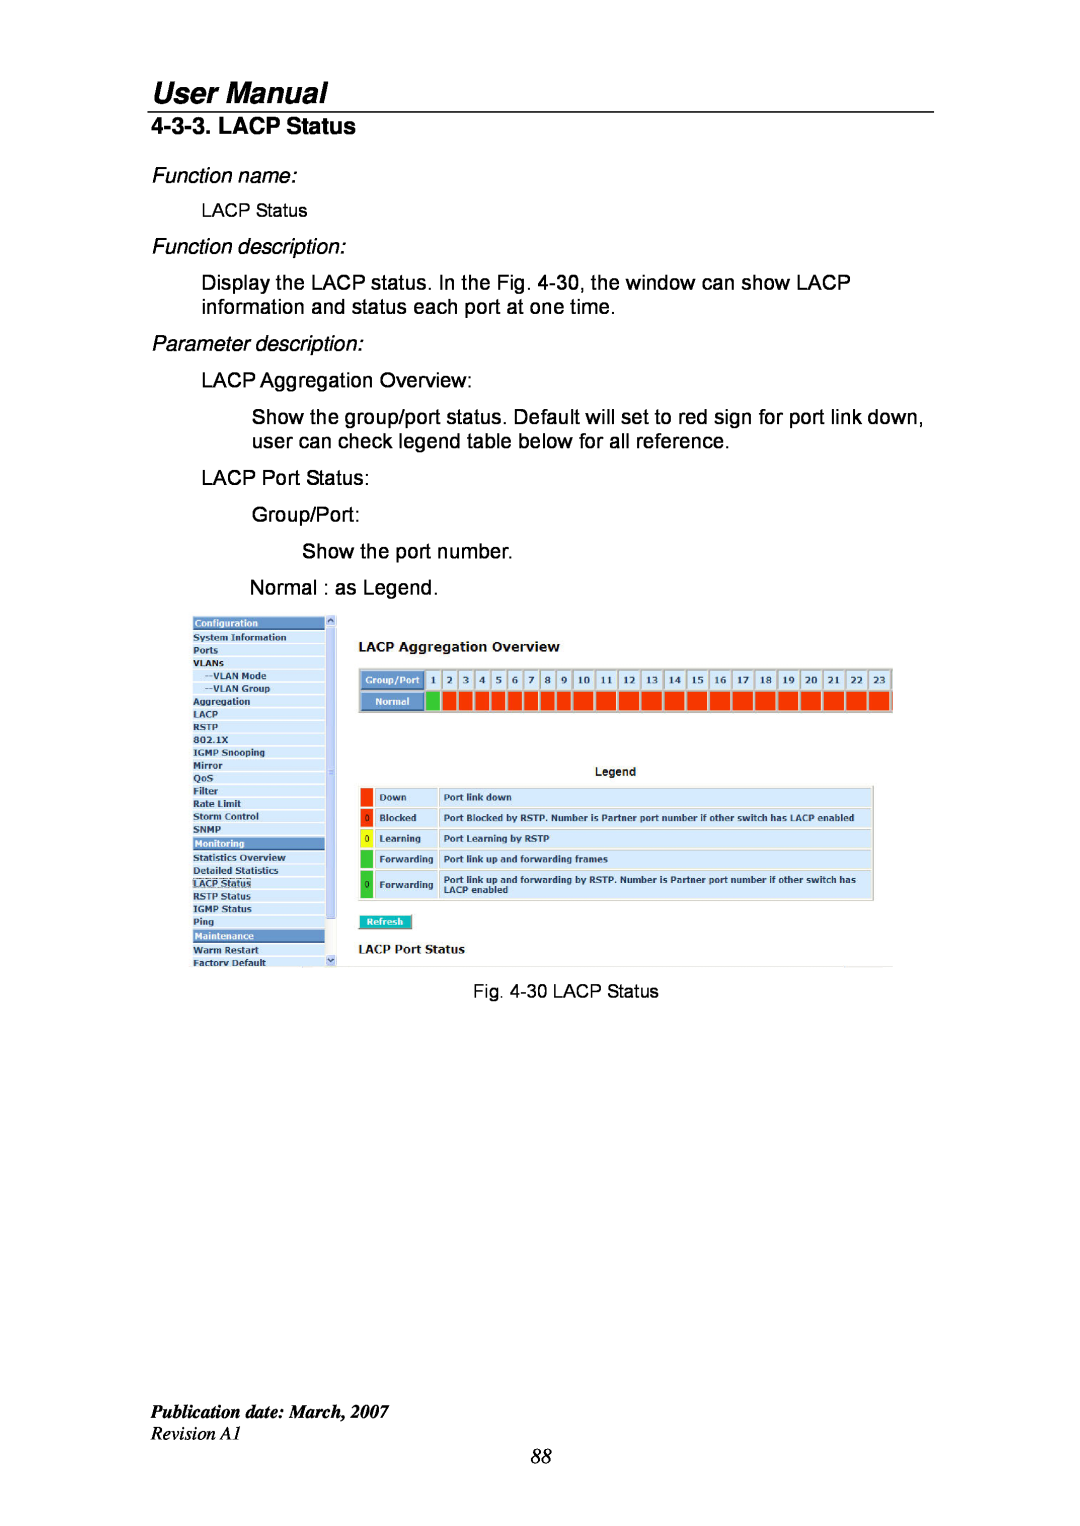 Ruby Tech GS-1224L manual LACP Status, User Manual, Function name, Function description, Parameter description 